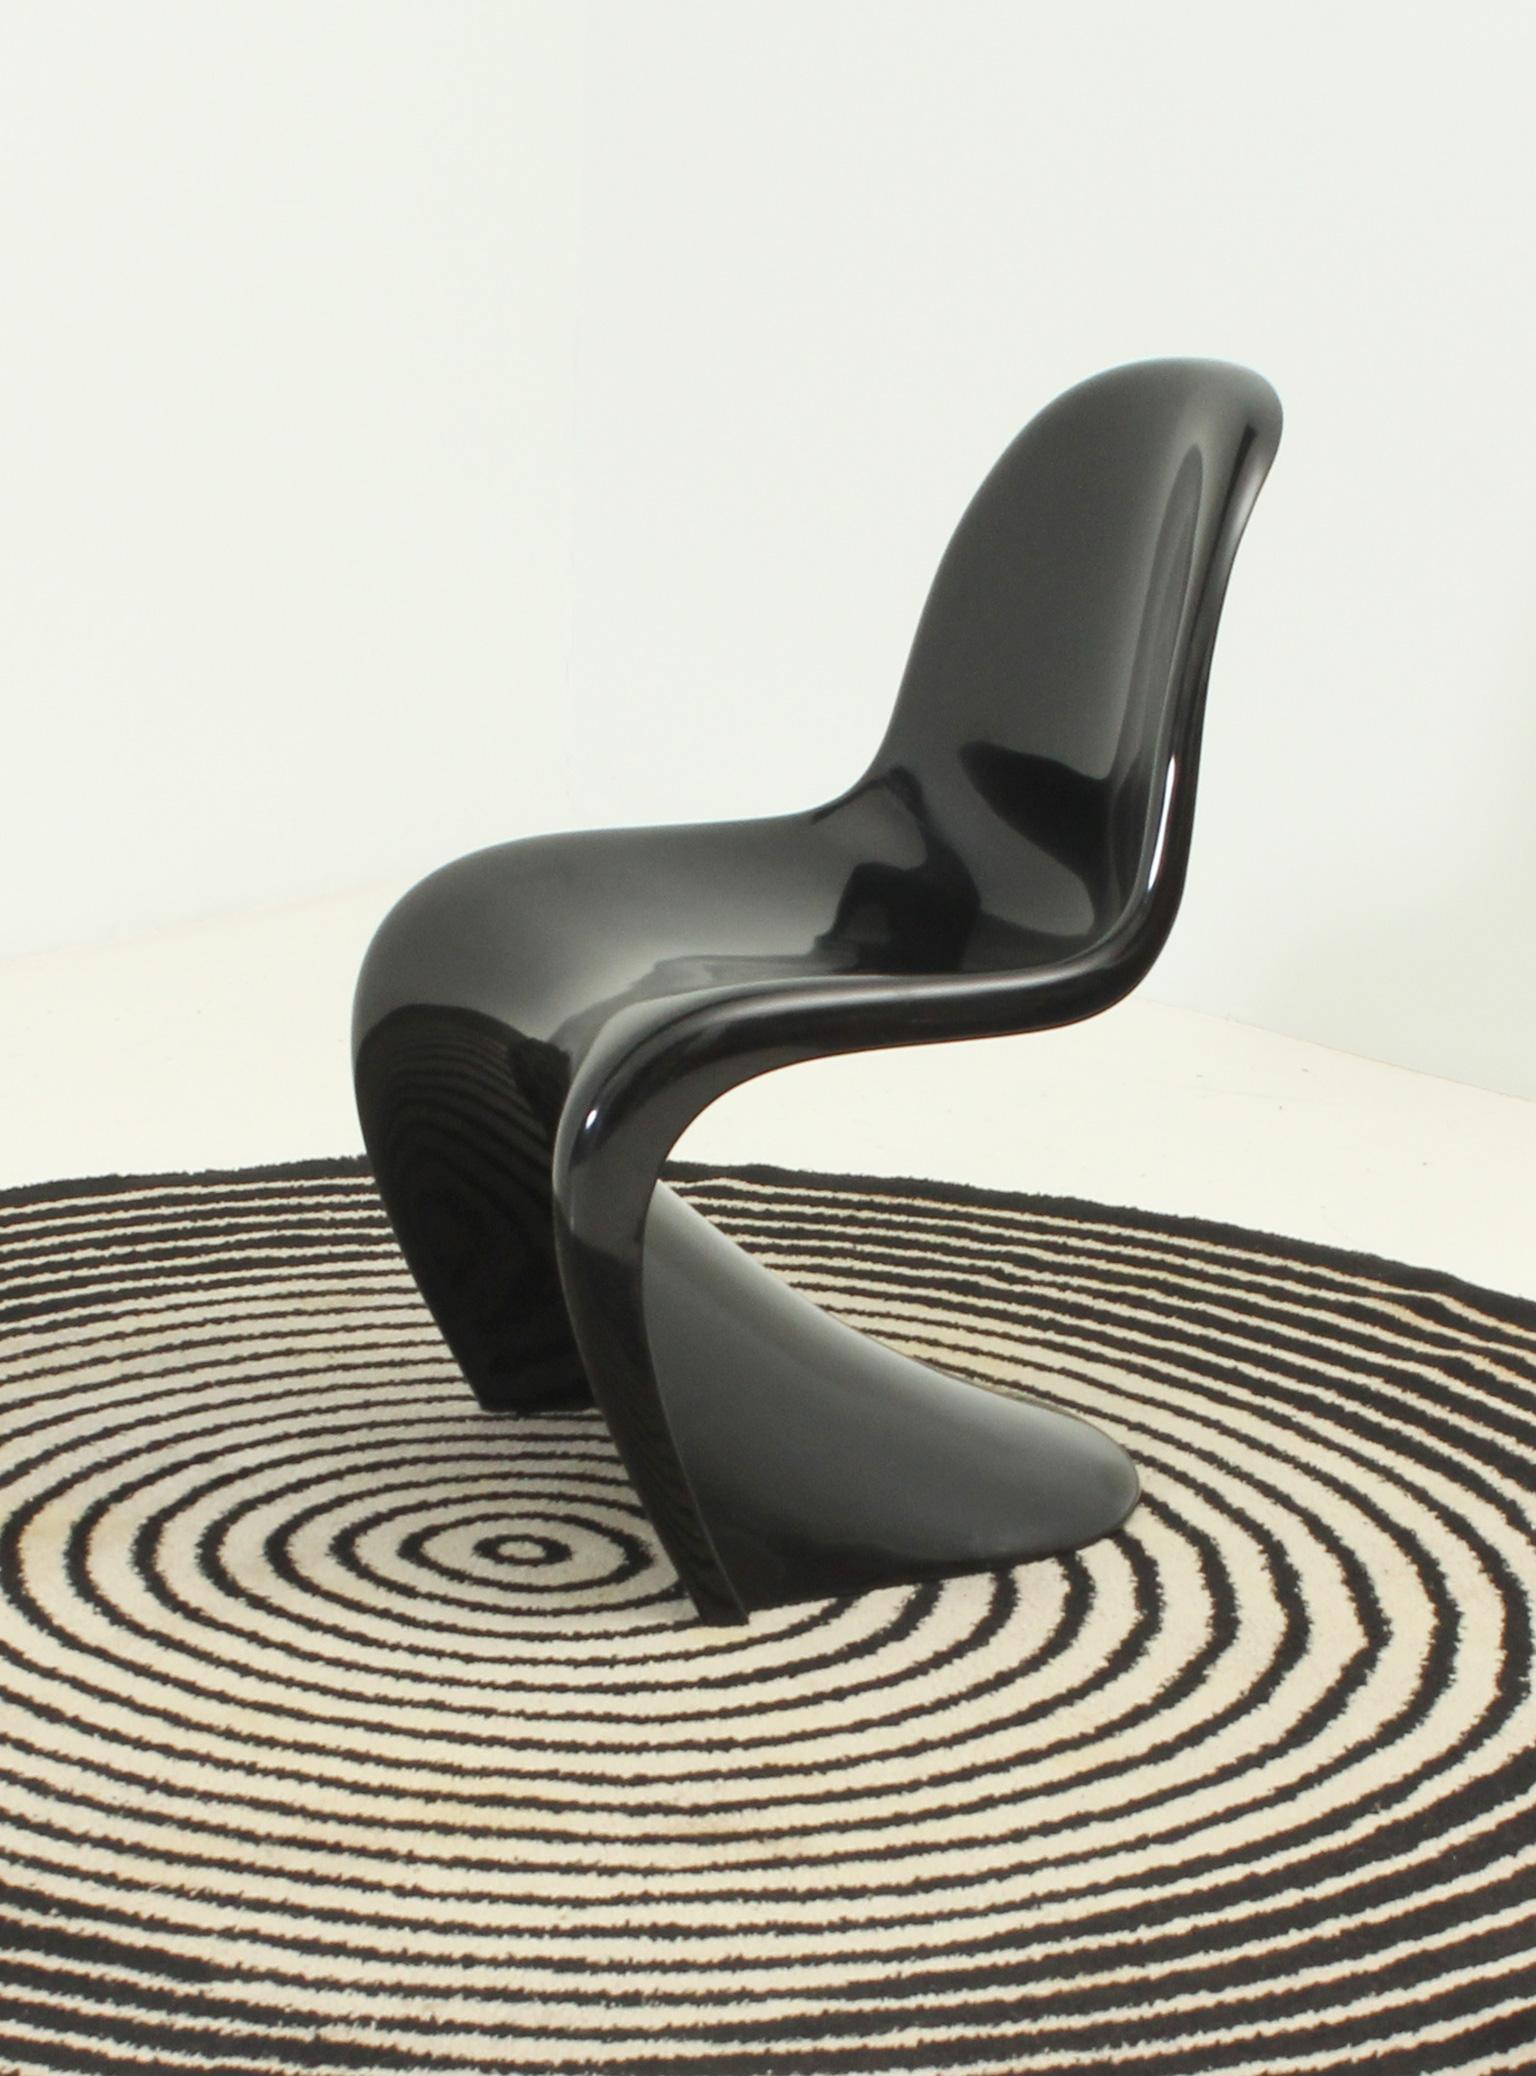 Beistellstuhl, entworfen von Verner Panton im Jahr 1967 für Herman Miller - Fehlbaum-Produktion, Deutschland. Dieses Exemplar ist 1971 in schwarzem, glänzendem Thermoplast gestempelt.